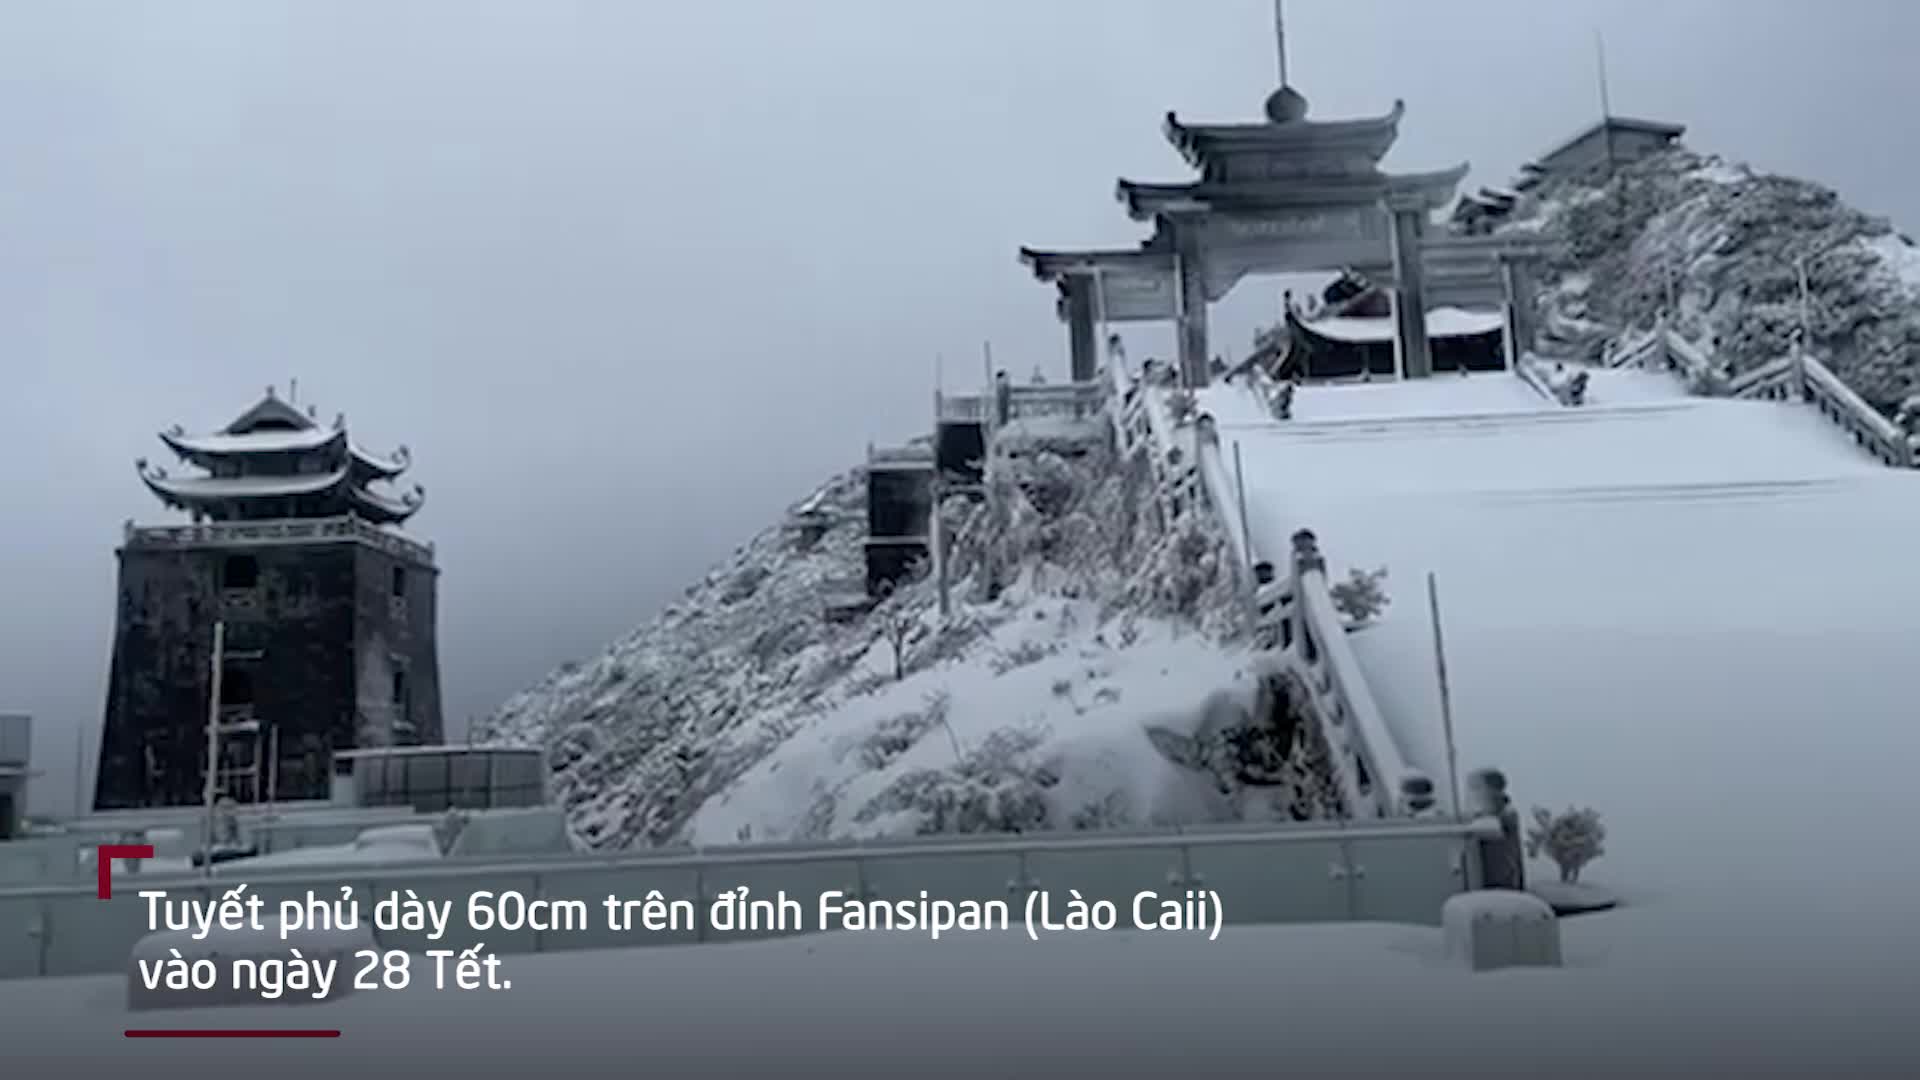 Tuyết phủ dày nửa mét trên đỉnh Fansipan ngày cận tết